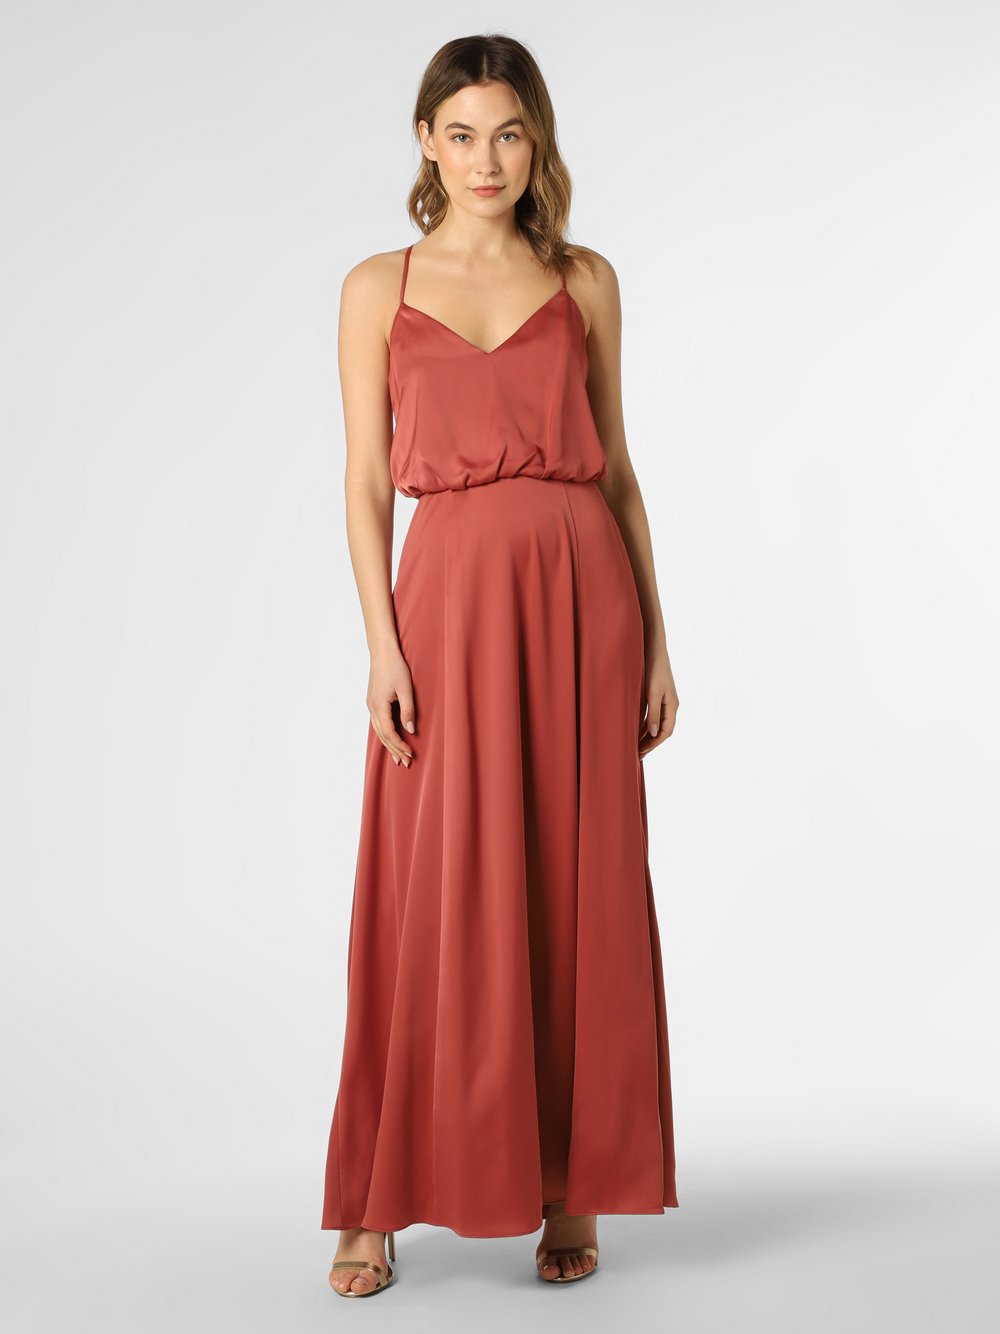 VM - Damska sukienka wieczorowa, pomarańczowy|różowy|czerwony